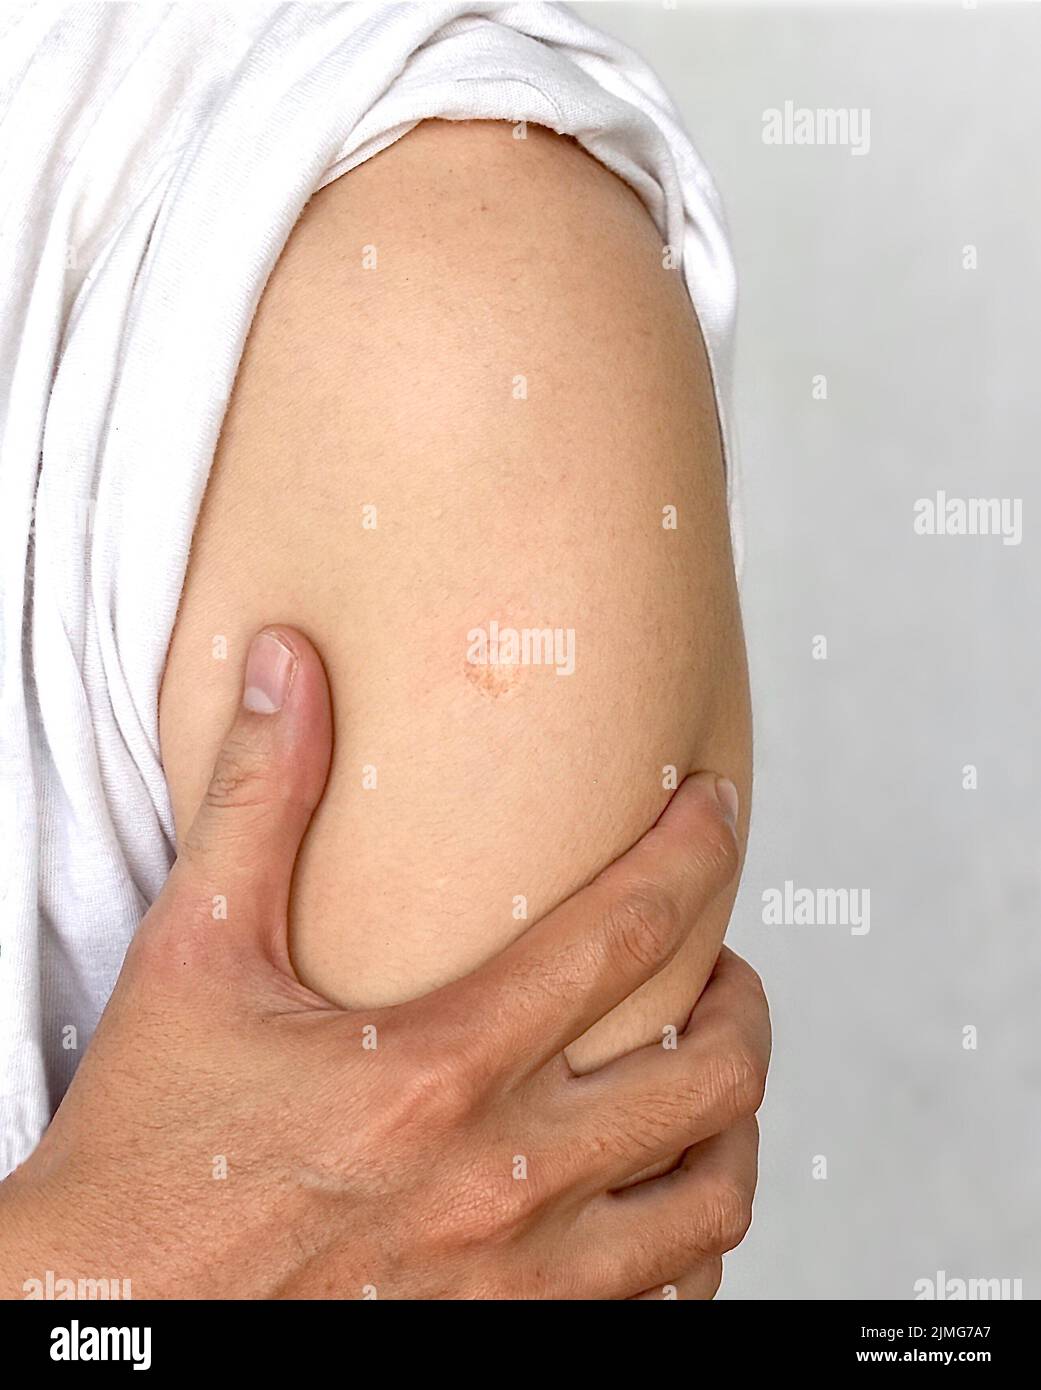 BCG o TBC marchio di cicatrice vaccino al braccio del sud-est asiatico uomo. Foto Stock